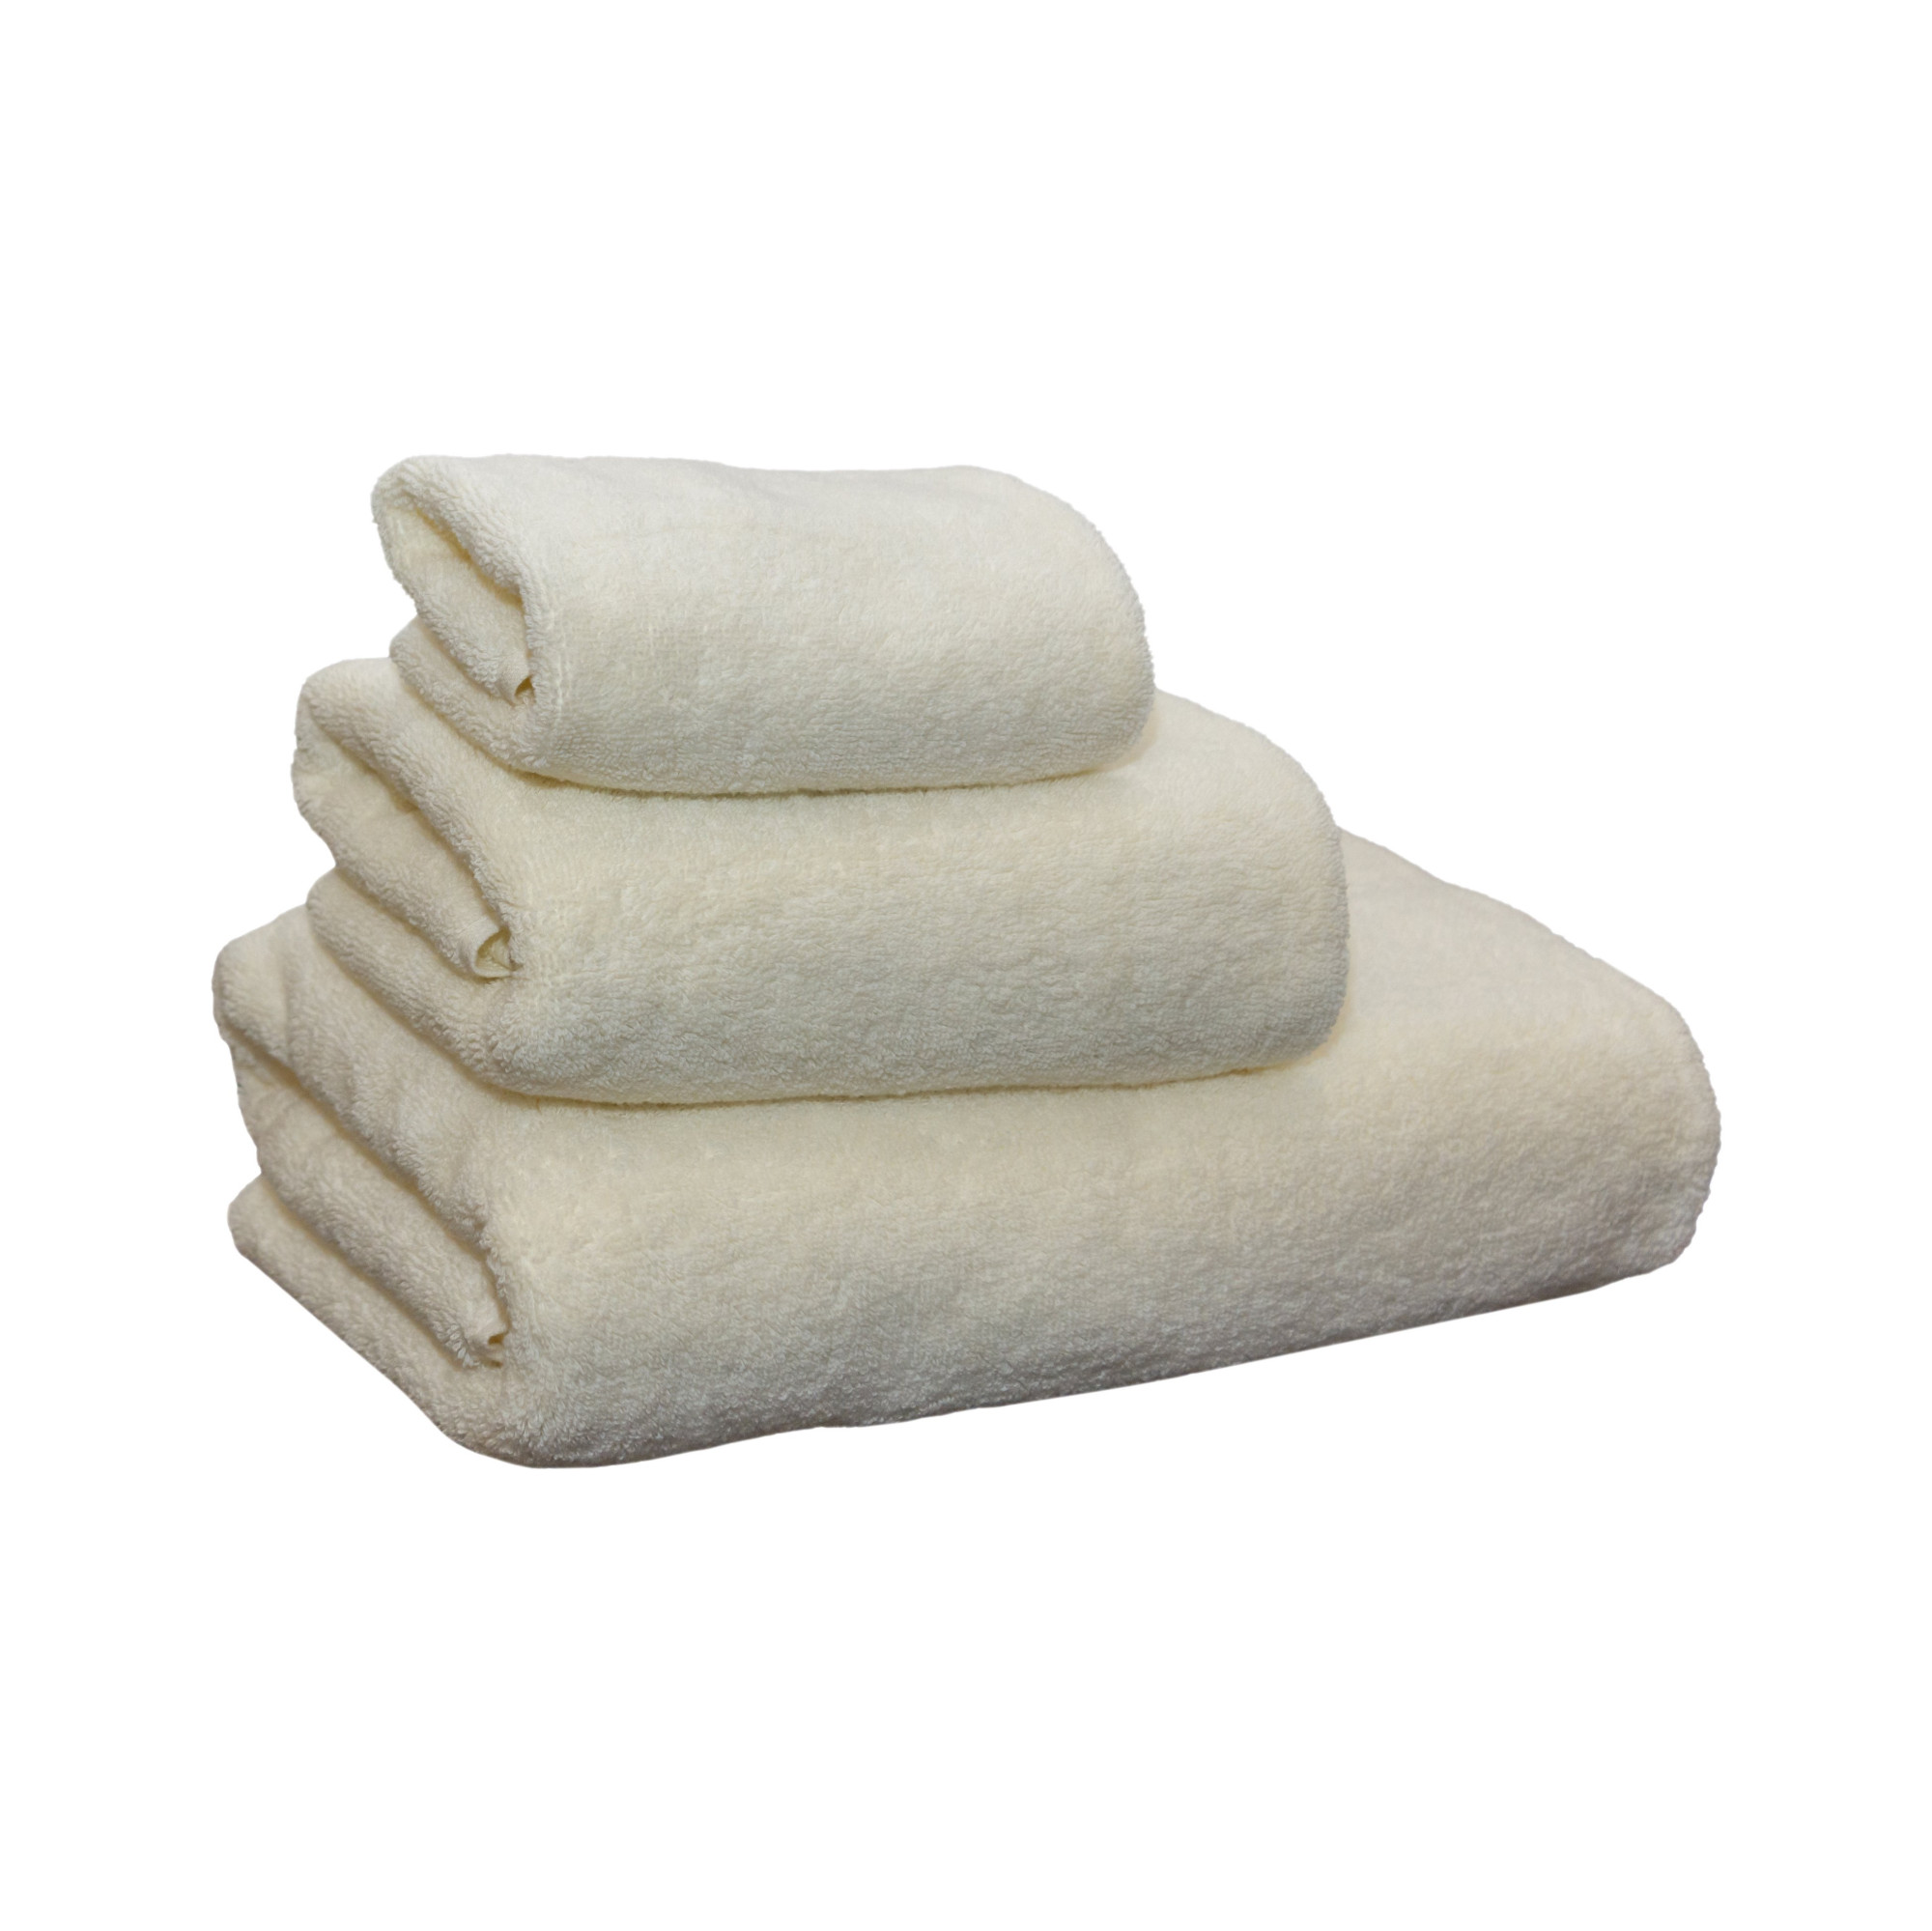 Terry towel 30x50, marshmallow, 100% cotton